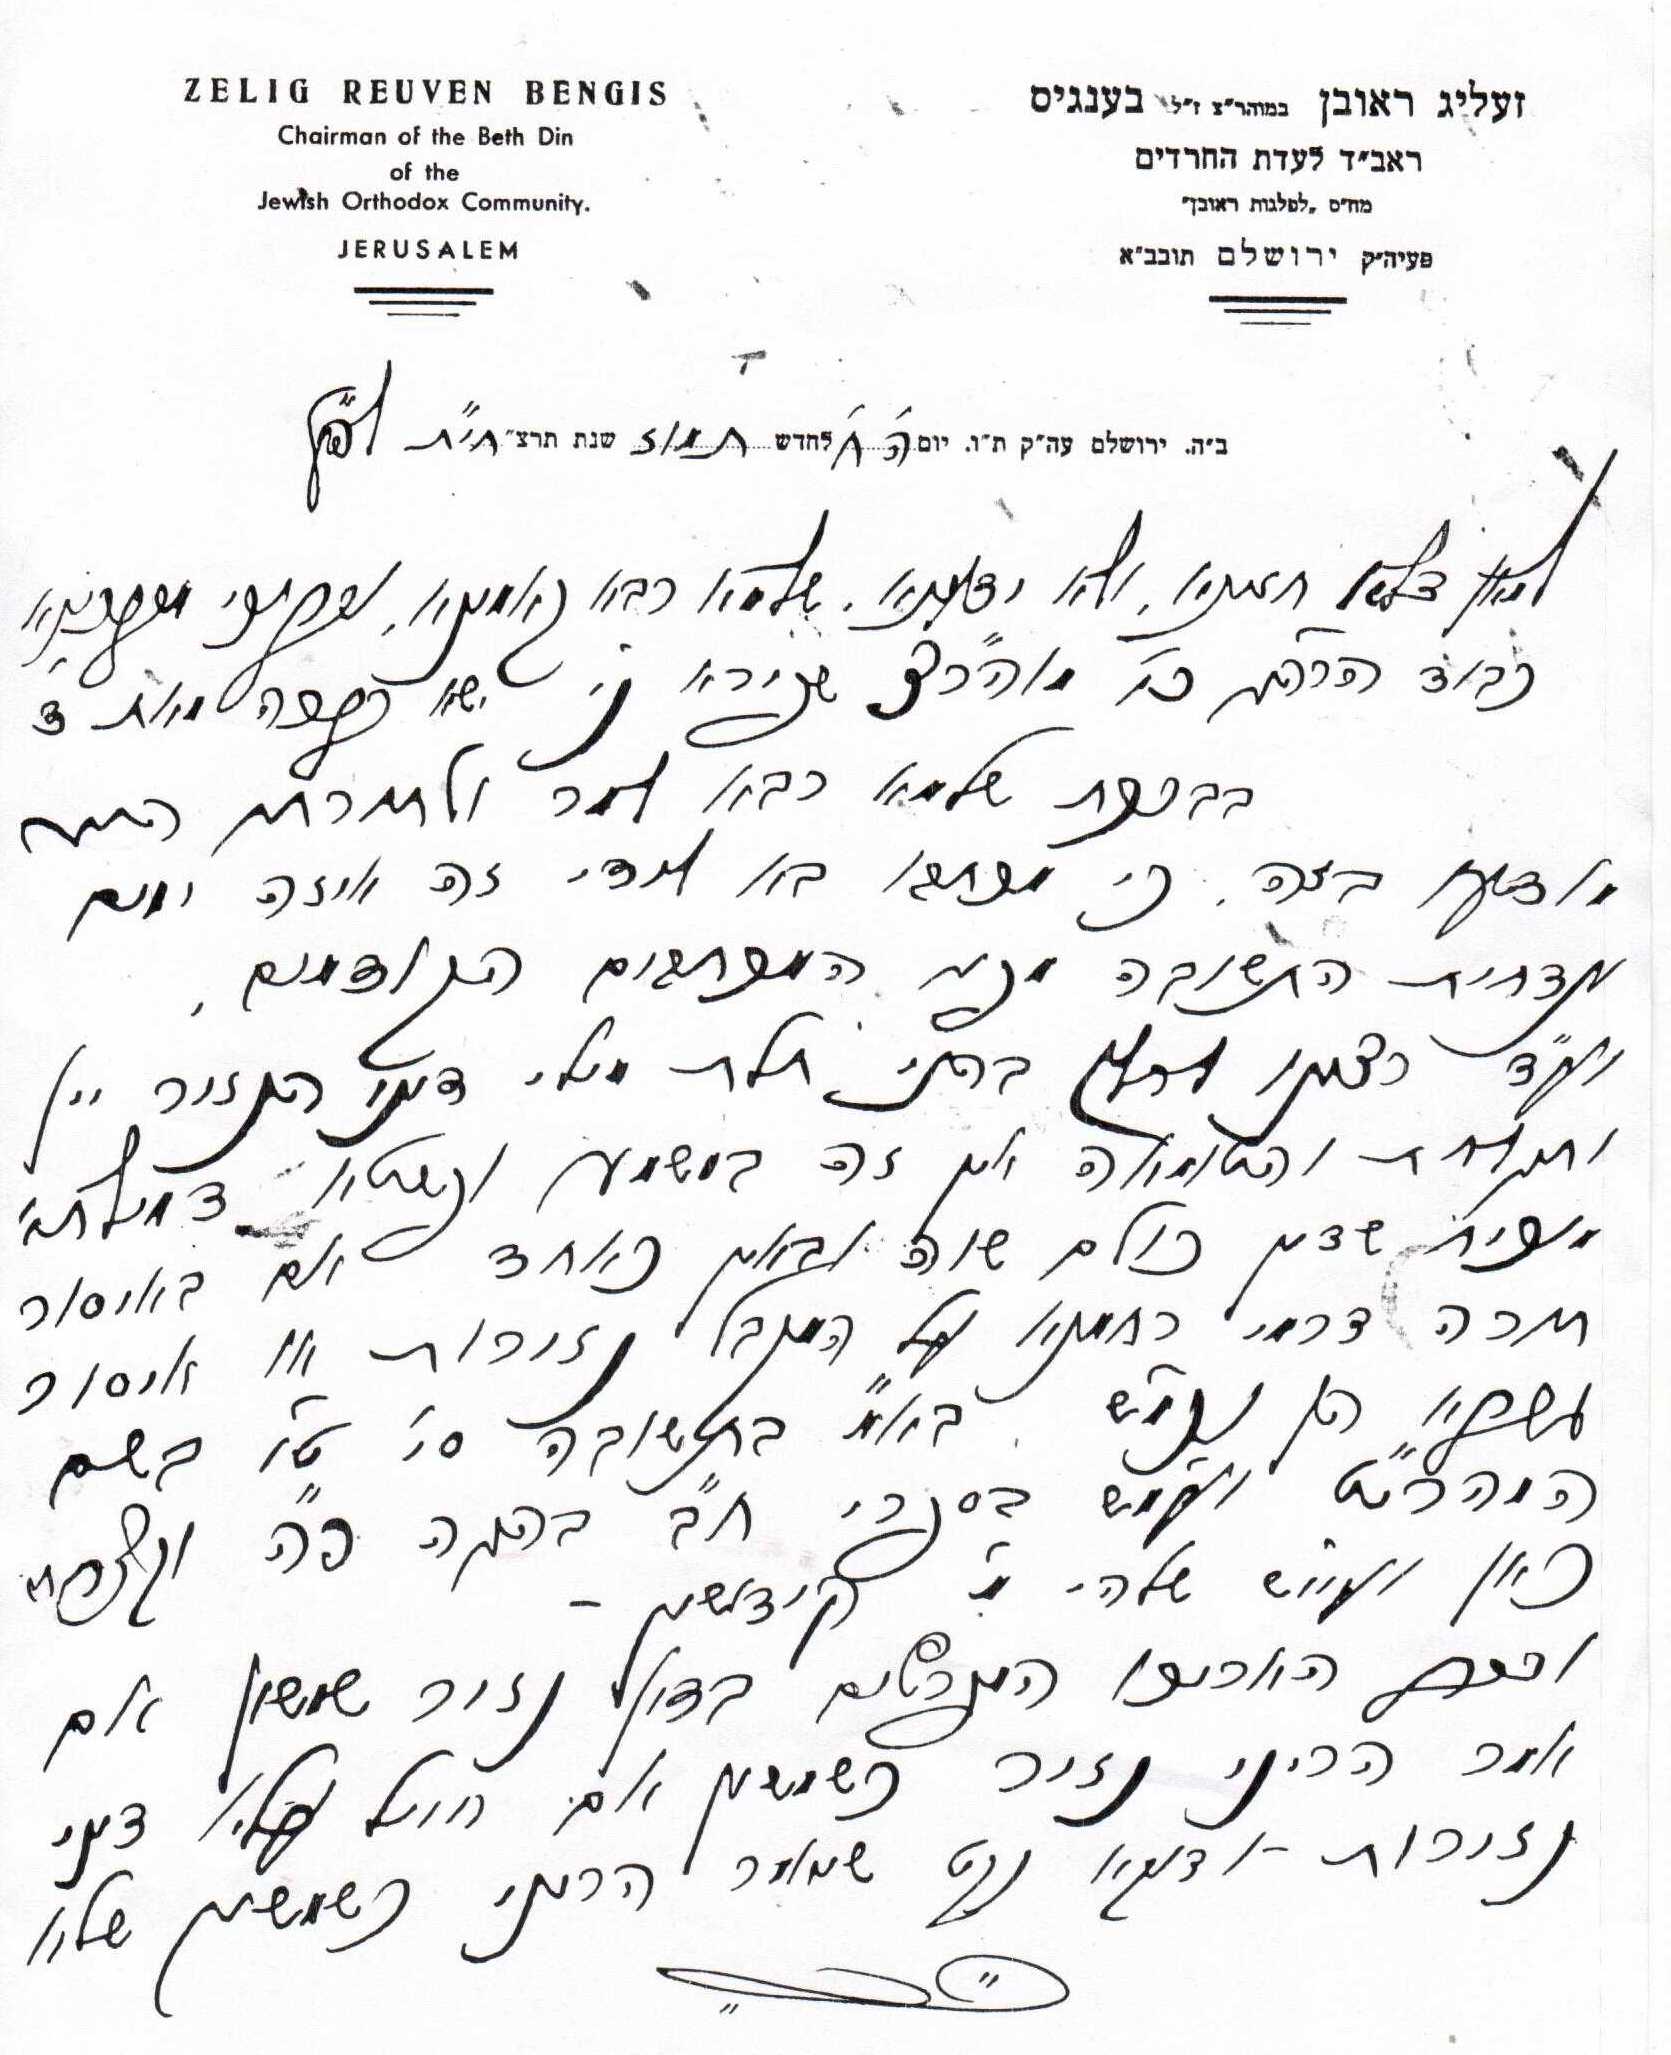 רבי זעליג ראובן בענגיס - מכתב בגדרי נזירות0001.jpg